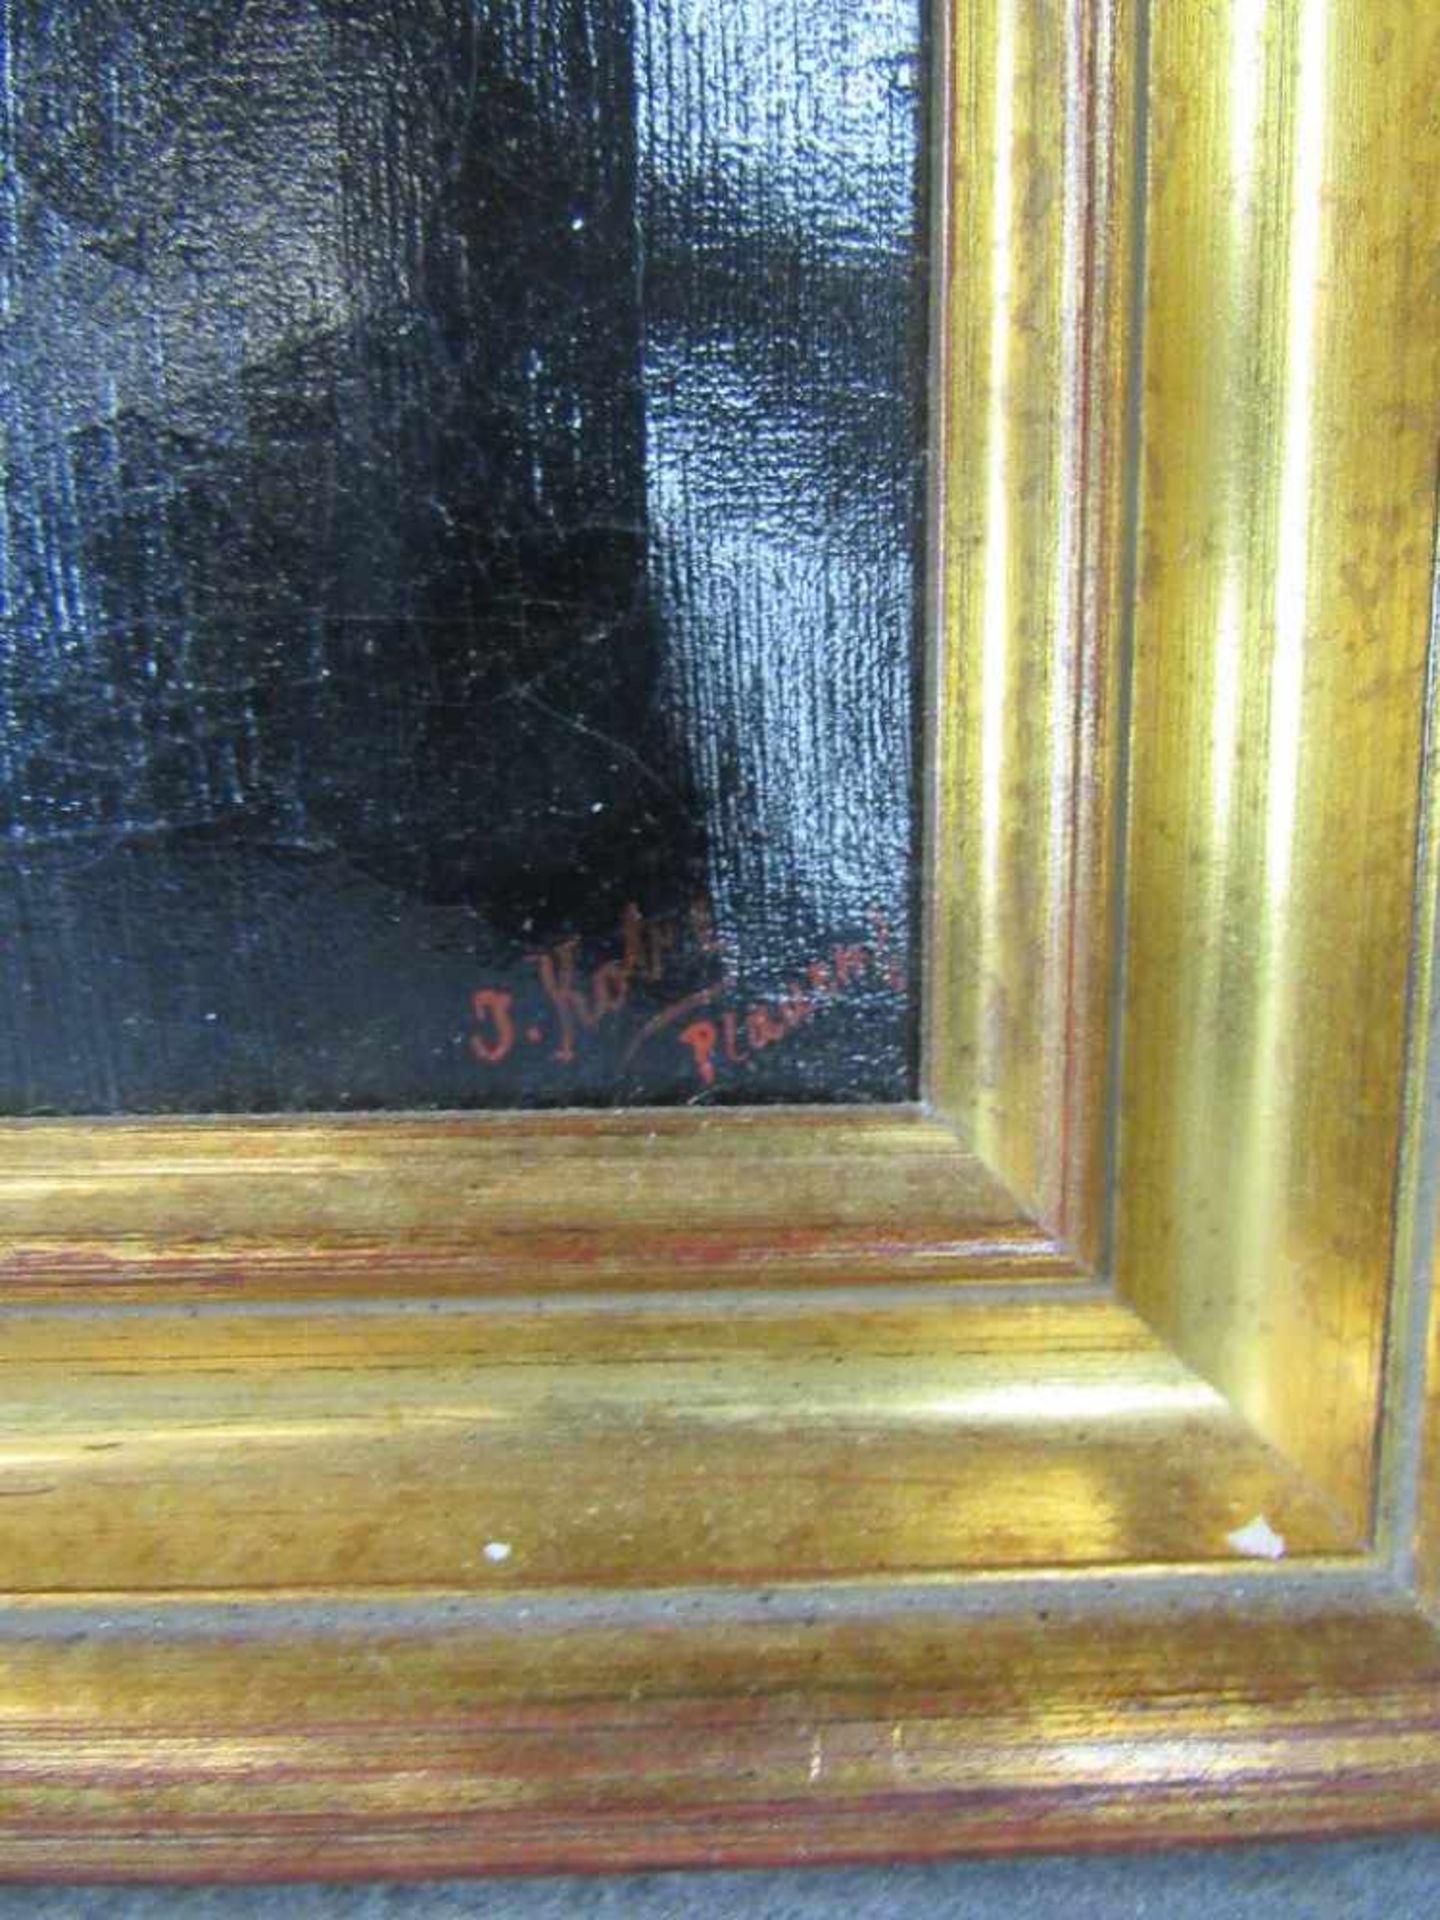 Ölgemälde Öl auf Leinwand Biedermeier rechts signiert unleserlich Rahmen neueren Datums 43x53cm - Bild 2 aus 4